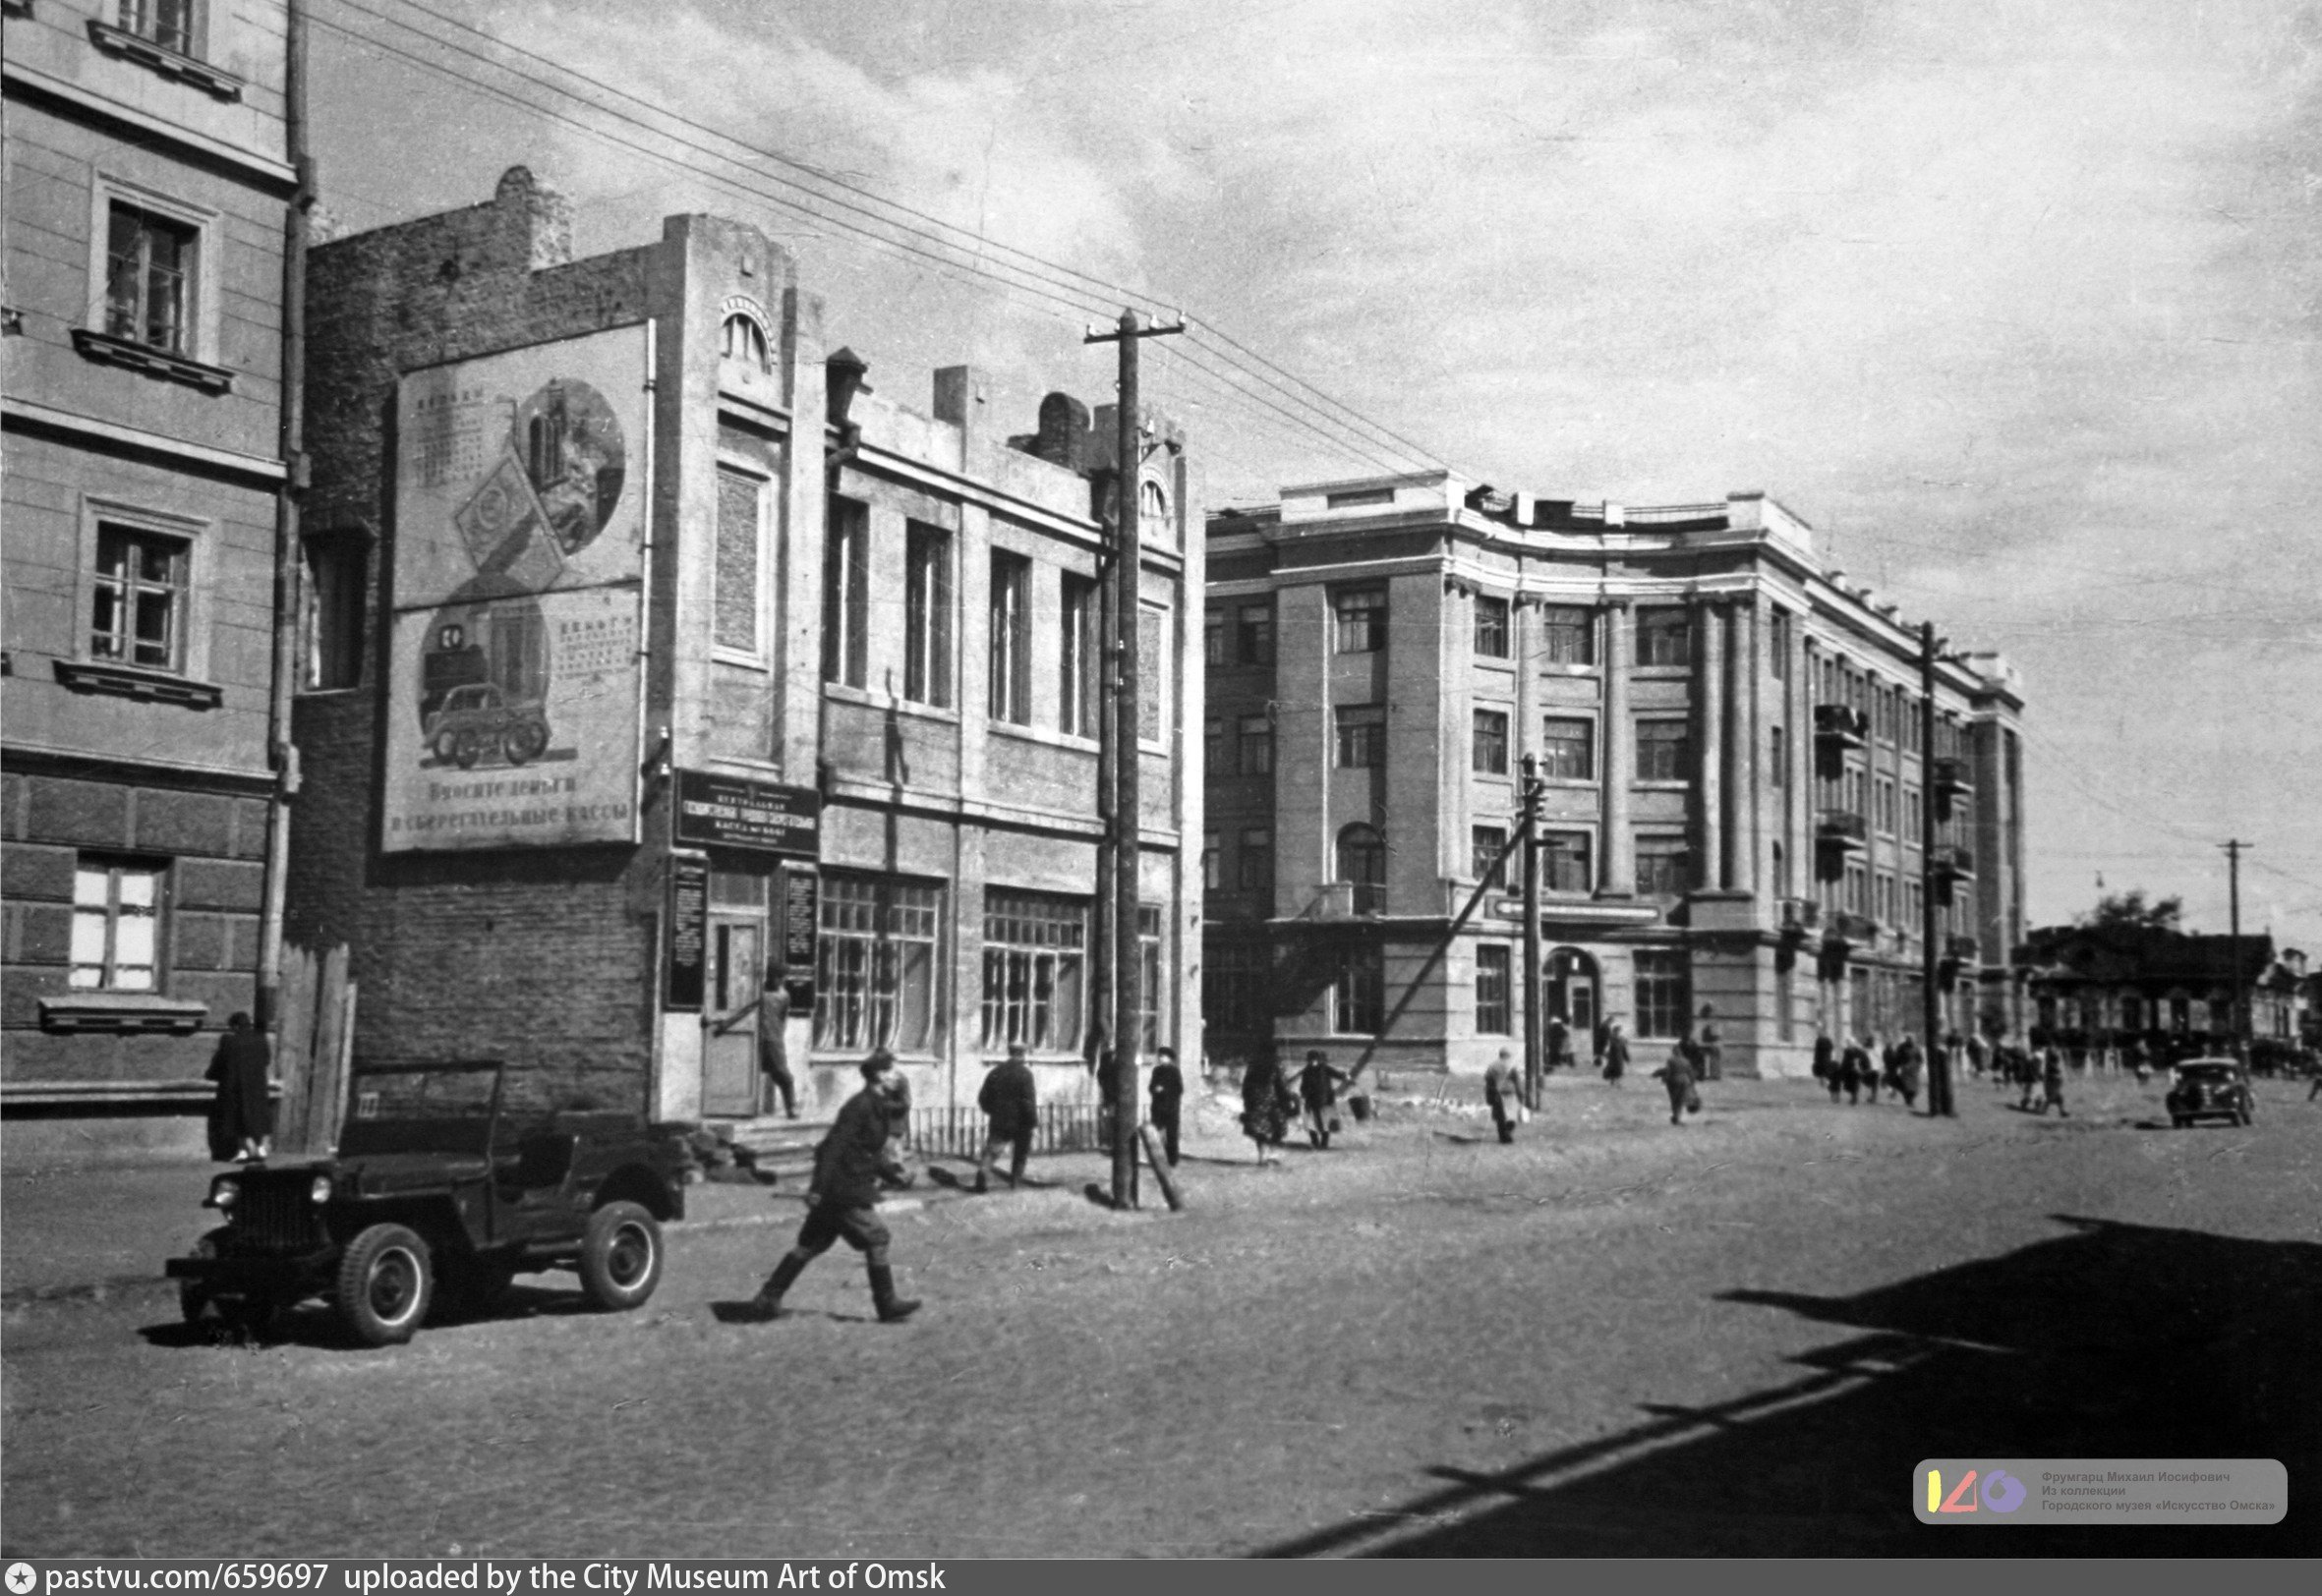 Улица Герцена изначально называлась Бутырской: «Бутырка» — это традиционное название для слобод на окраинах